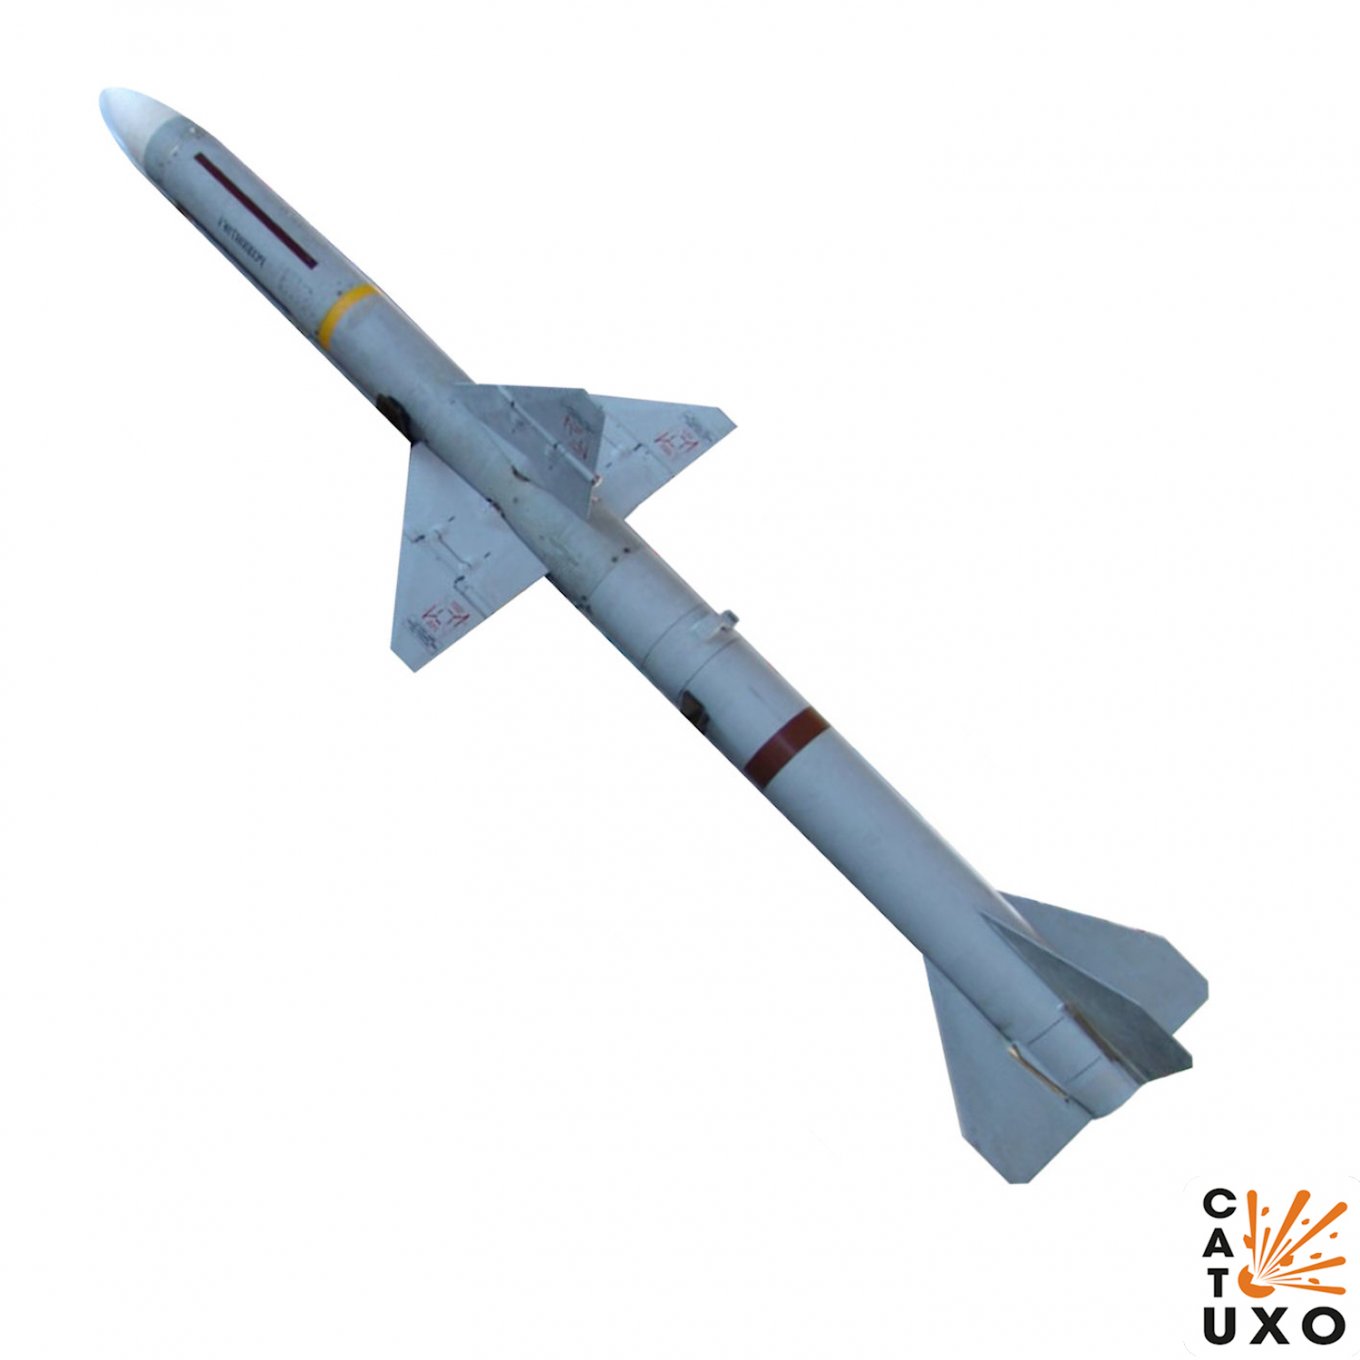 AIM-7 Sparrow missile